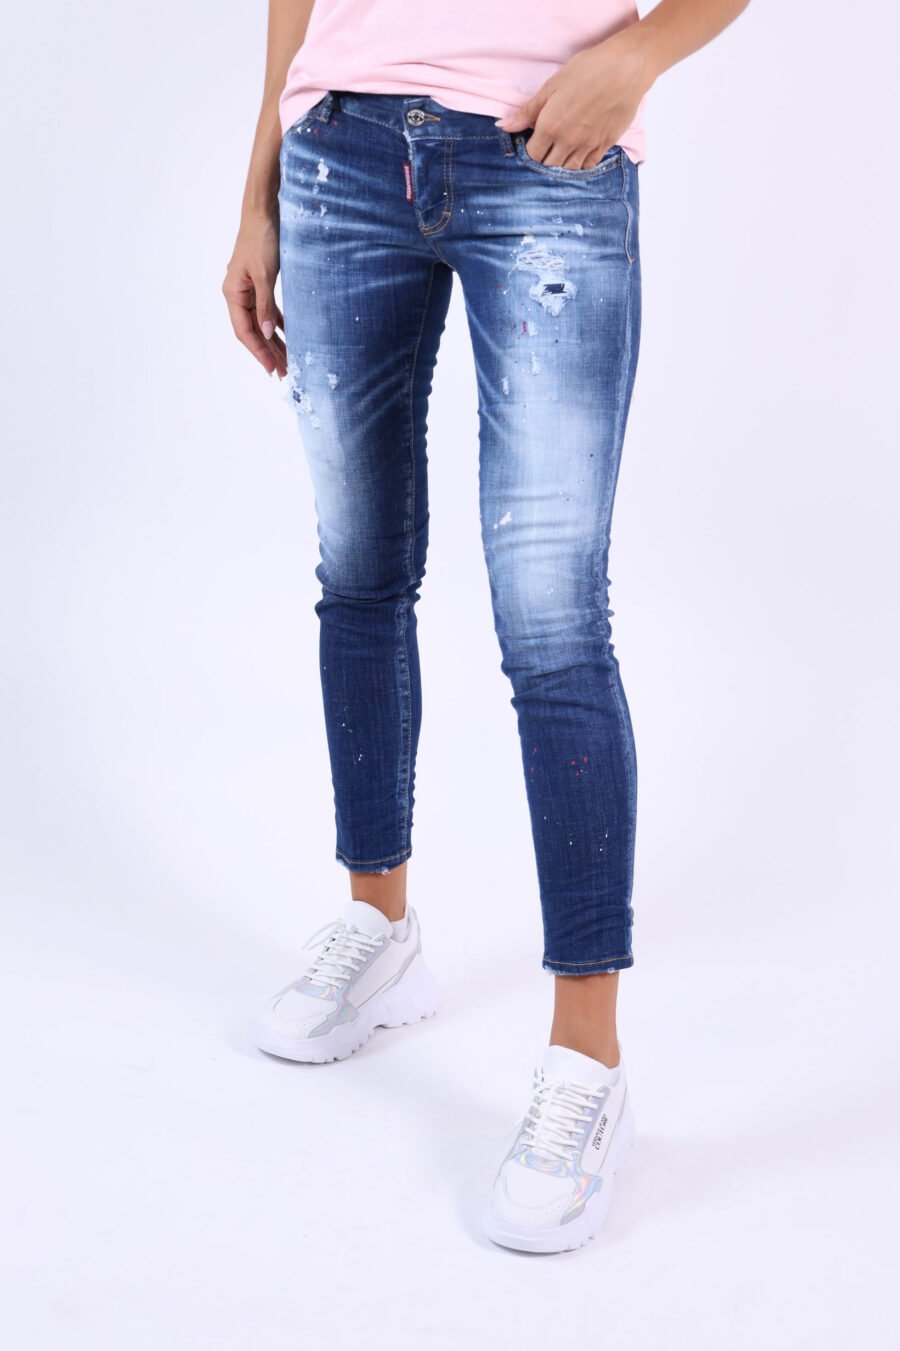 Jeans "Jennifer Jean" blau mit Farbspritzern und verblichenem Effekt - 361223054662201901